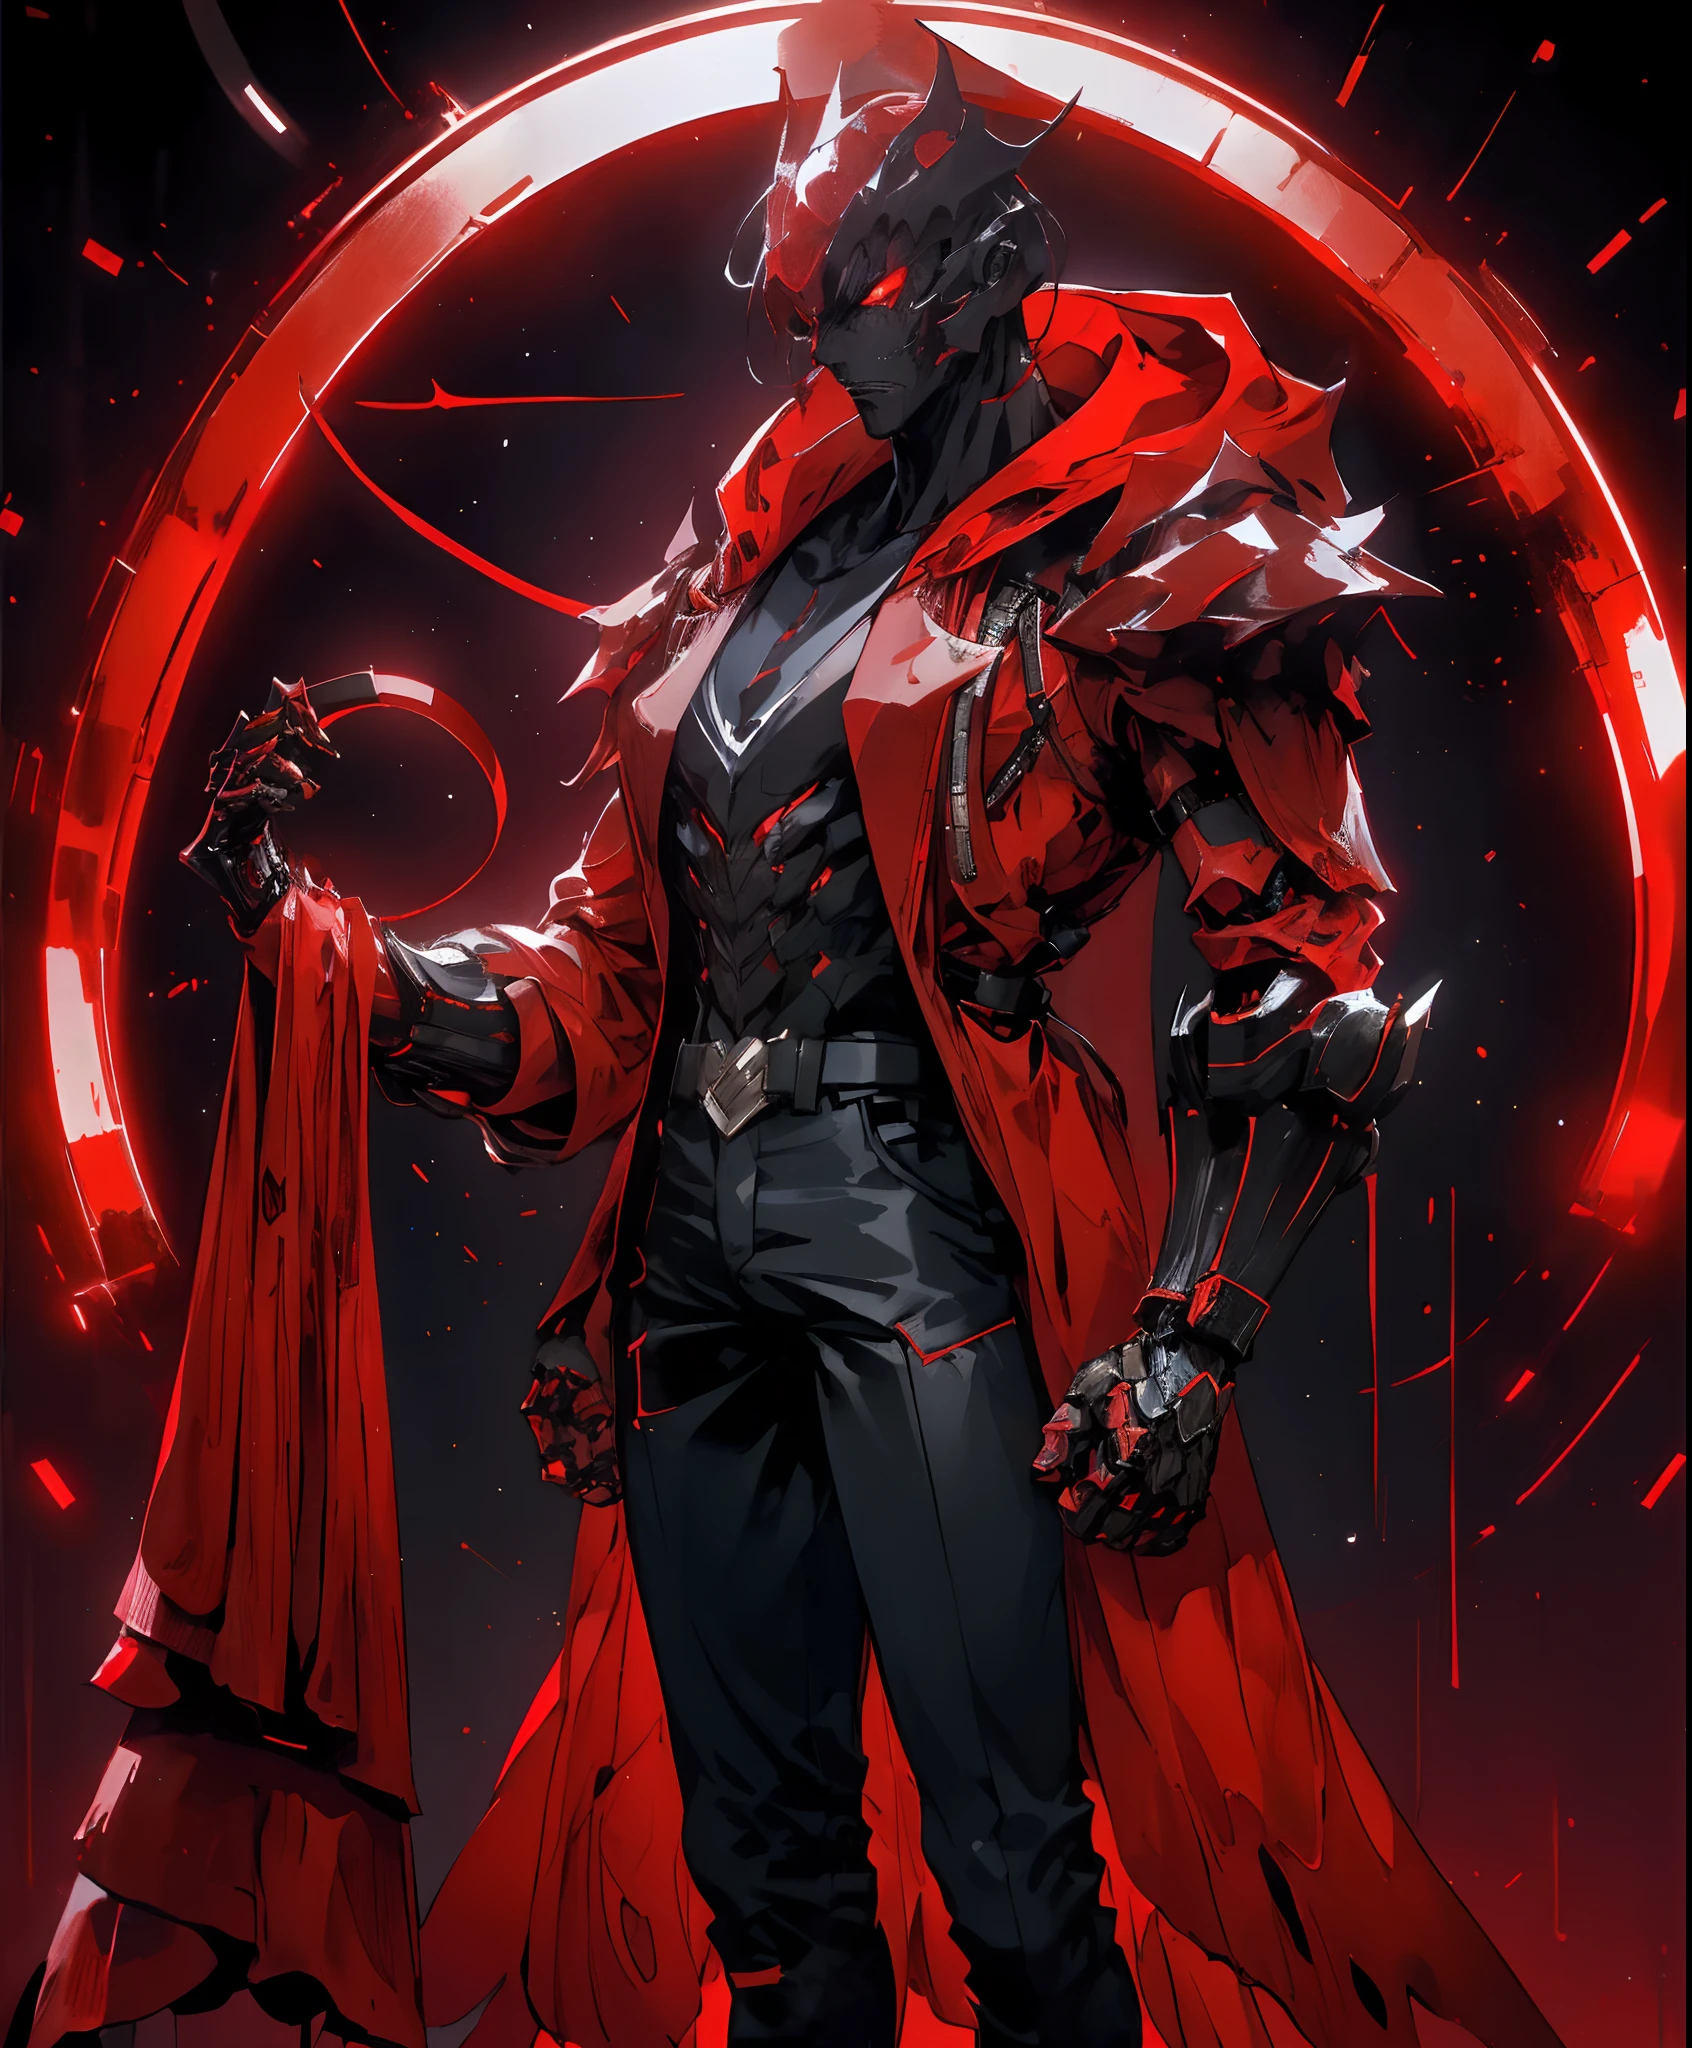 un hombre con una chaqueta roja y pantalones negros parado en una habitación oscura, vistiendo una túnica roja de cultista, traje carmesí, personaje de mortal kombat, como personaje de tekken, personaje del juego de lucha, Asesino ciberpunk, mago encapuchado rojo, trajes ciberpunk, ropa carmesí, el ninja rojo, vistiendo una armadura de asesino de cuero, un asesino adolescente nervioso, chaqueta roja genial, matón callejero cyberpunk